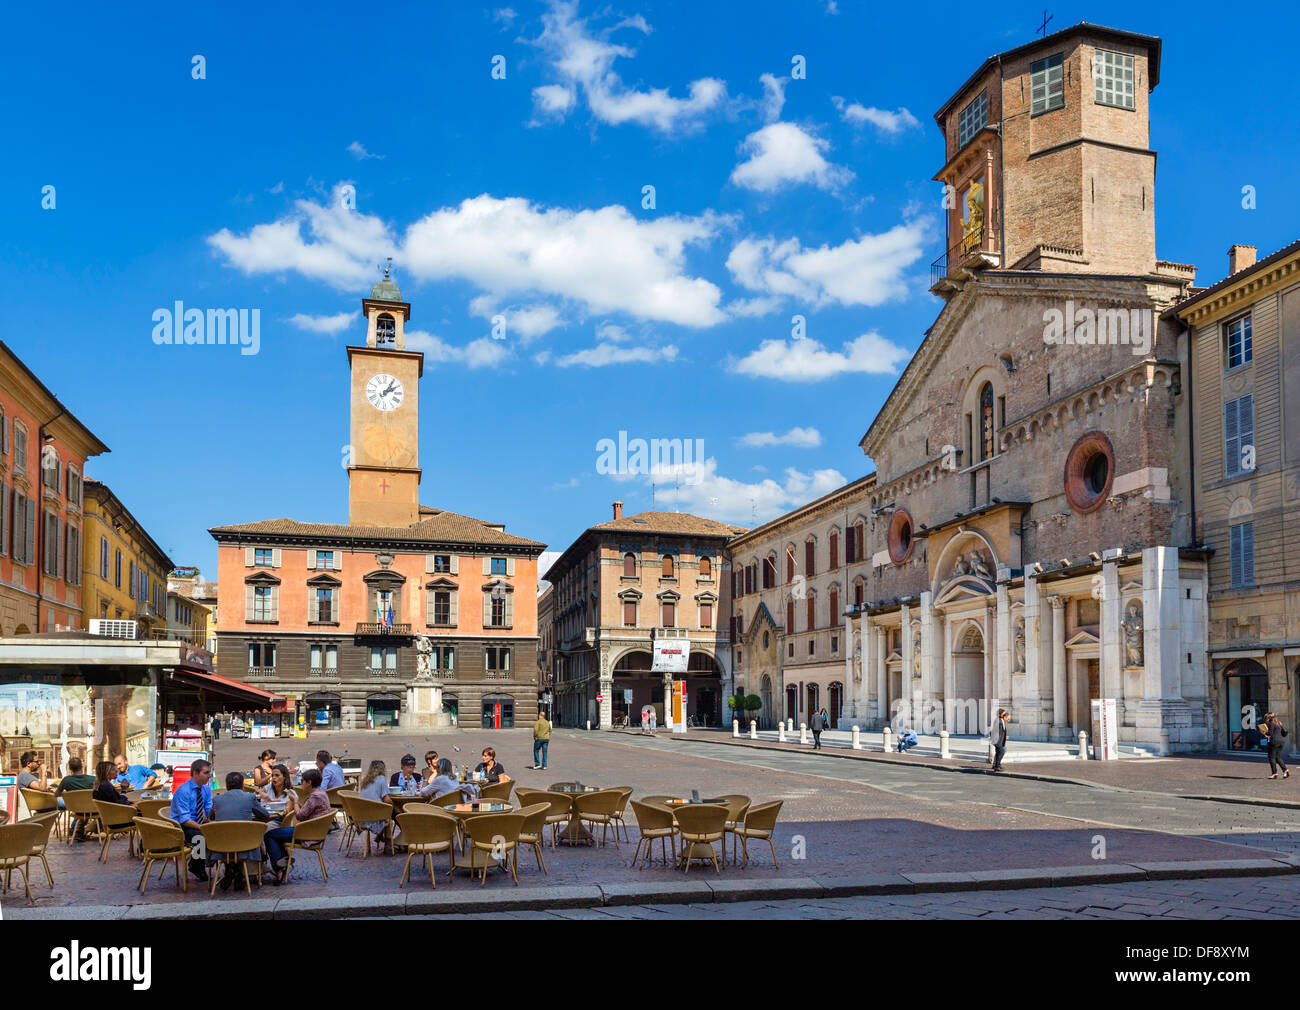 Cafe in the Piazza Prampolini with the Duomo to the right, Reggio Emila (Reggio nell'Emilia), Emilia Romagna, Italy Stock Photo